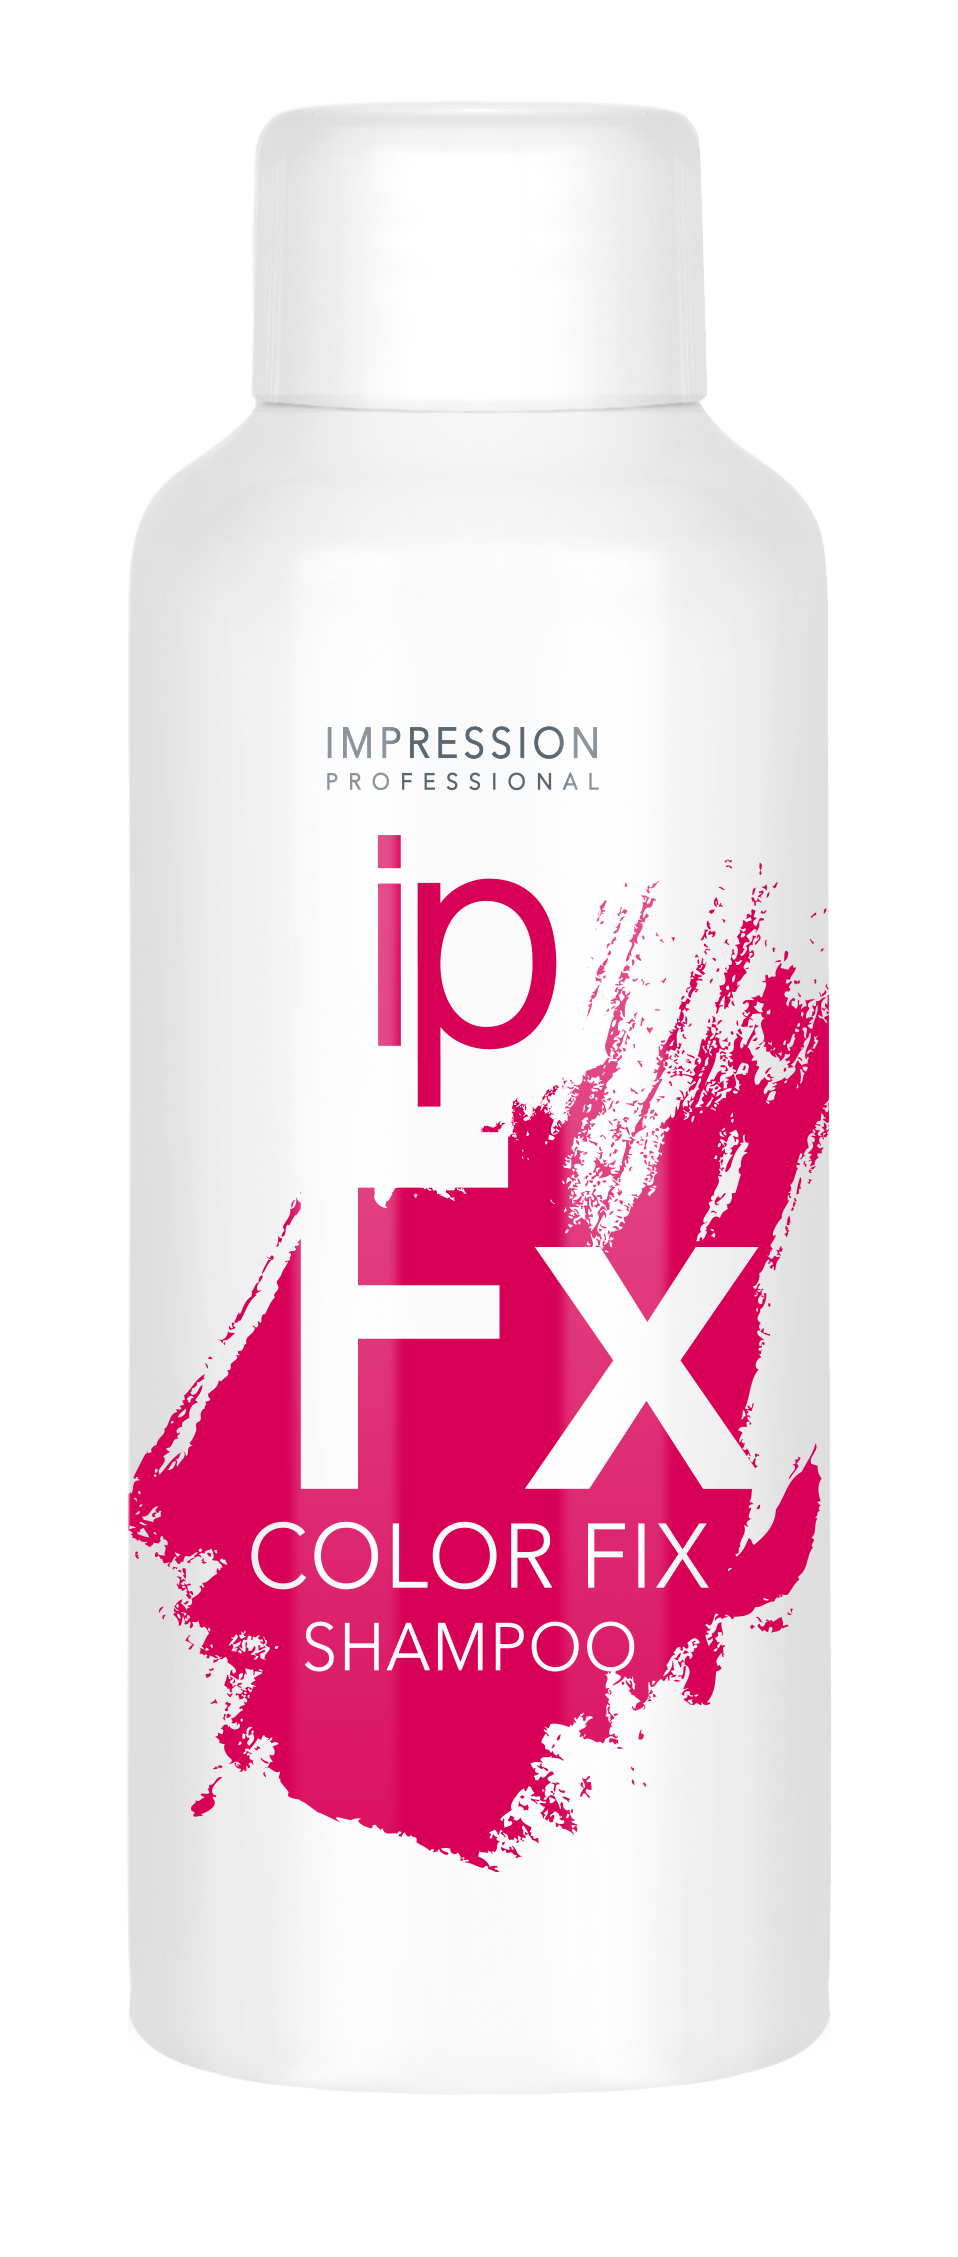 Шампунь для волос Impression Professional Color Fix стабилизатор цвета 100мл - в интернет-магазине tut-beauty.by